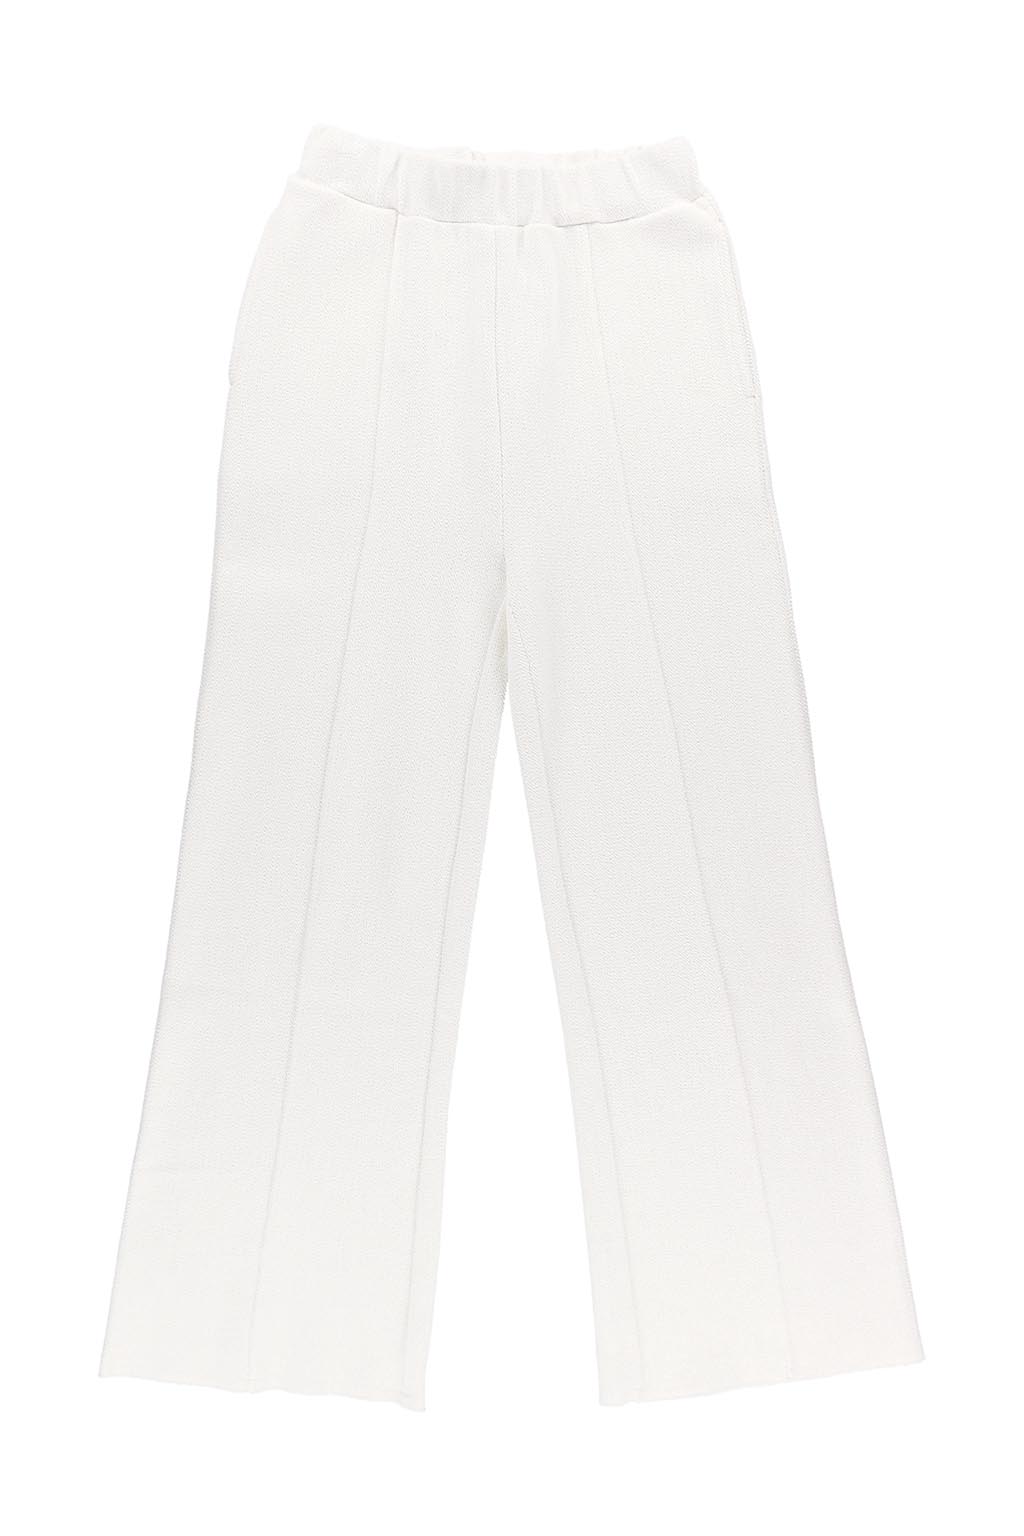 herringbone-wide-pants-white-02